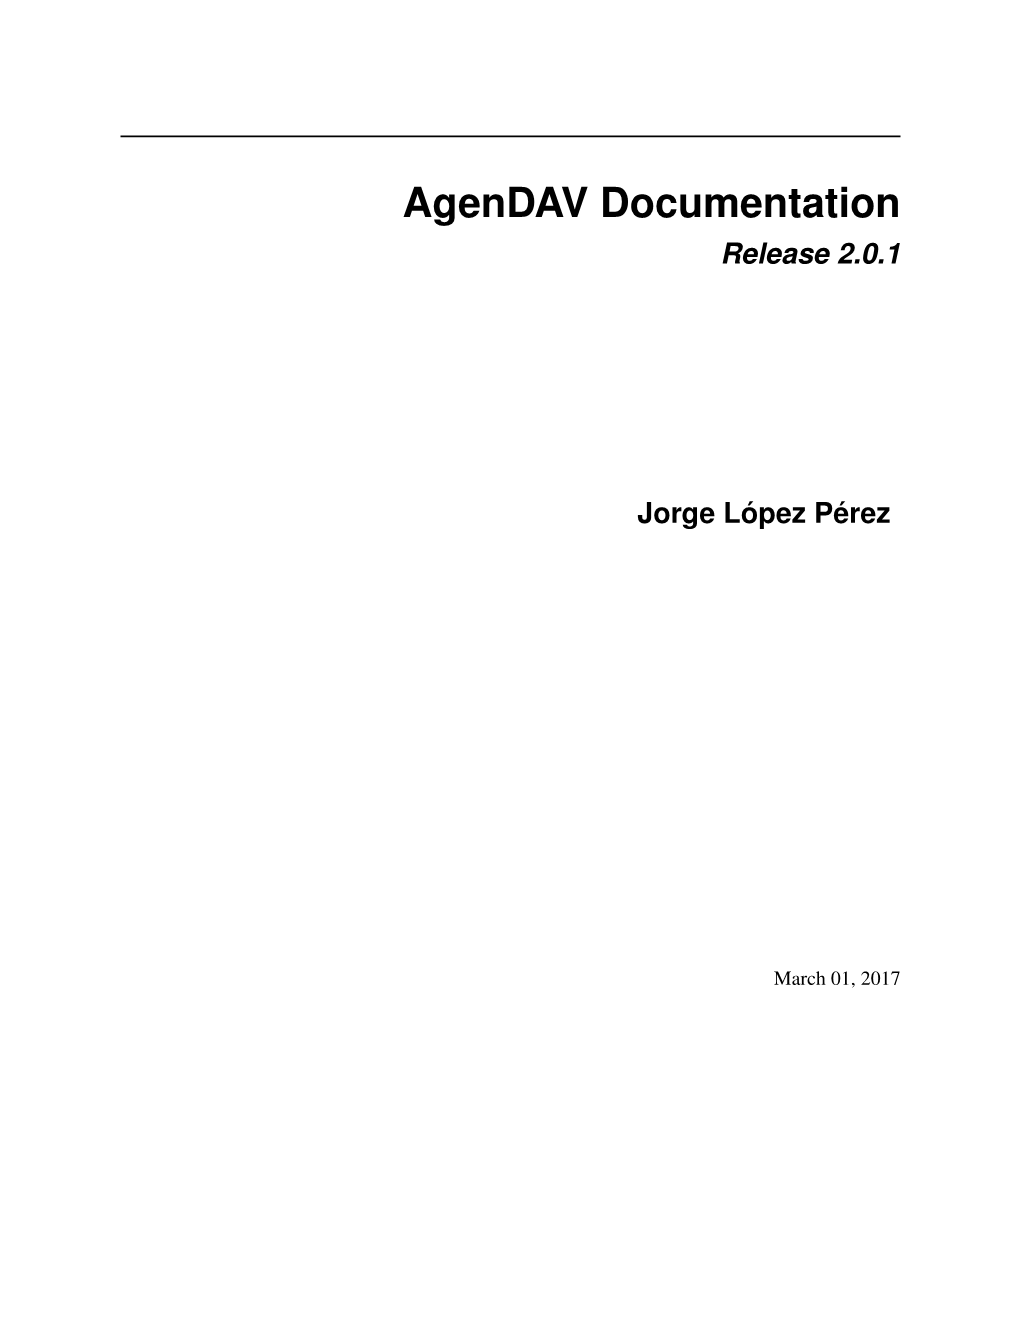 Agendav Documentation Release 2.0.1